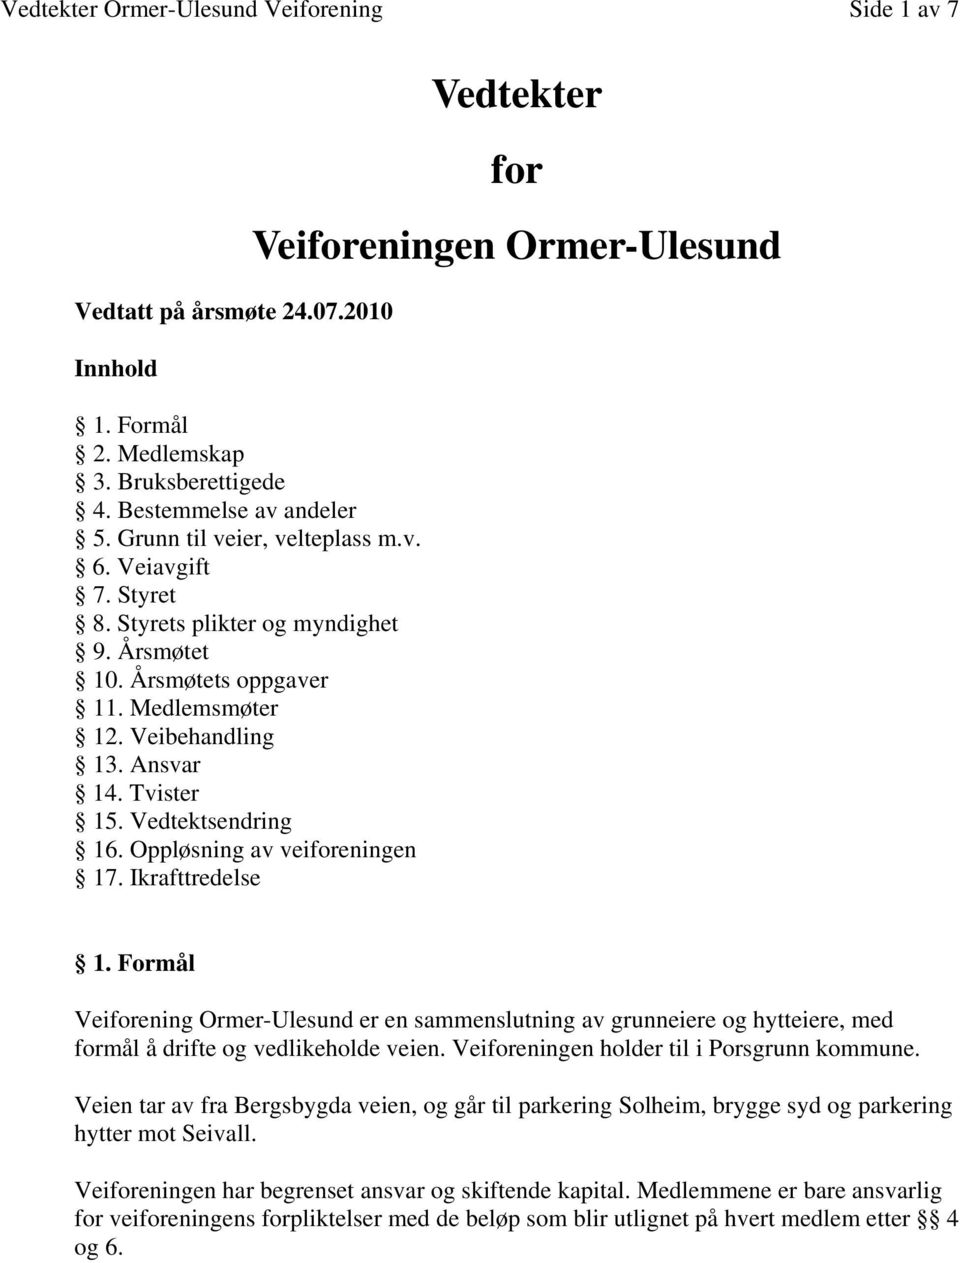 Ikrafttredelse Vedtekter for Veiforeningen Ormer-Ulesund 1. Formål Veiforening Ormer-Ulesund er en sammenslutning av grunneiere og hytteiere, med formål å drifte og vedlikeholde veien.